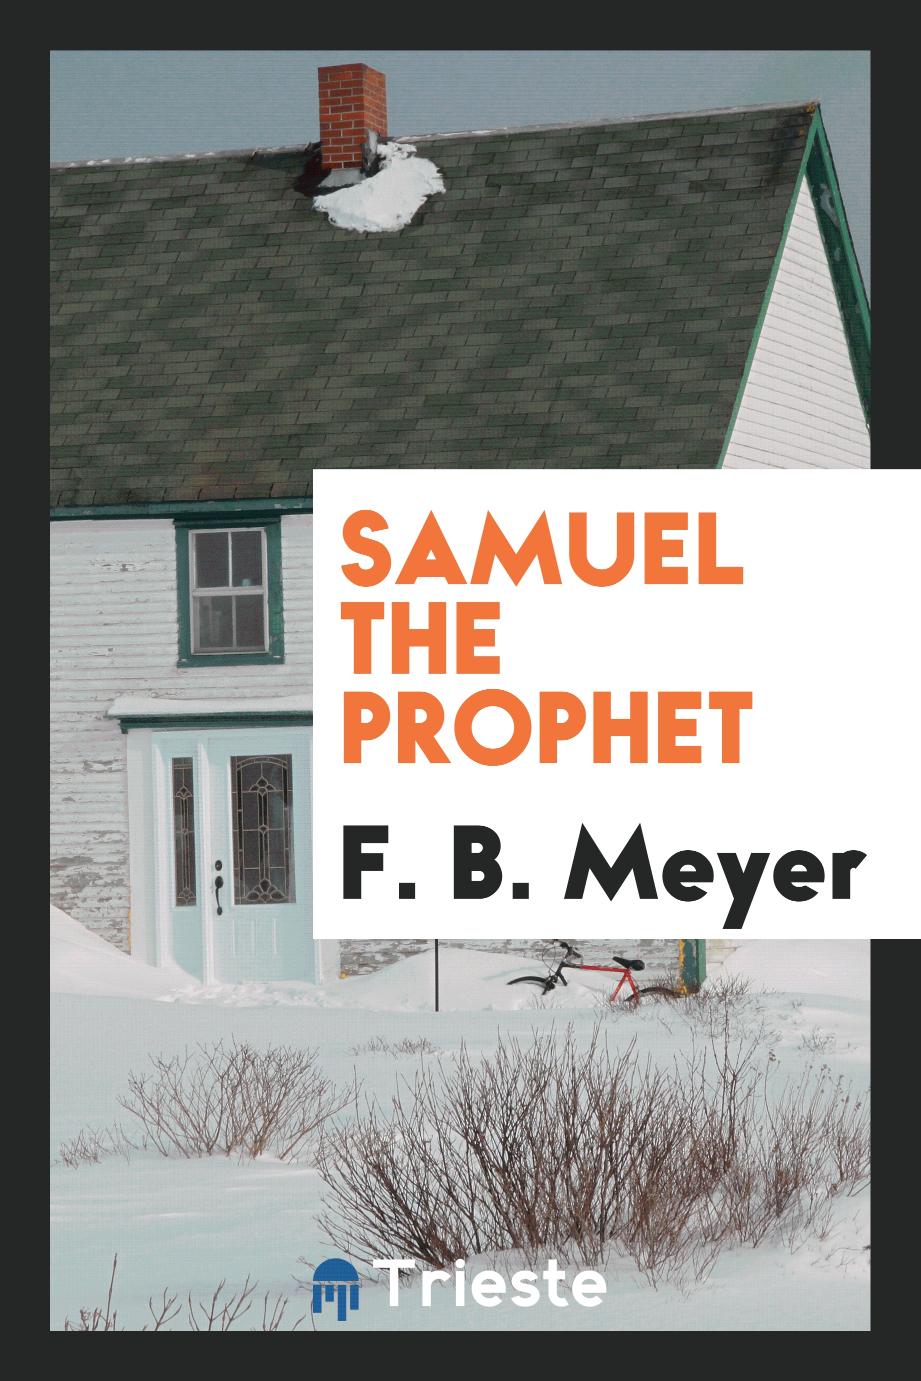 Samuel the prophet